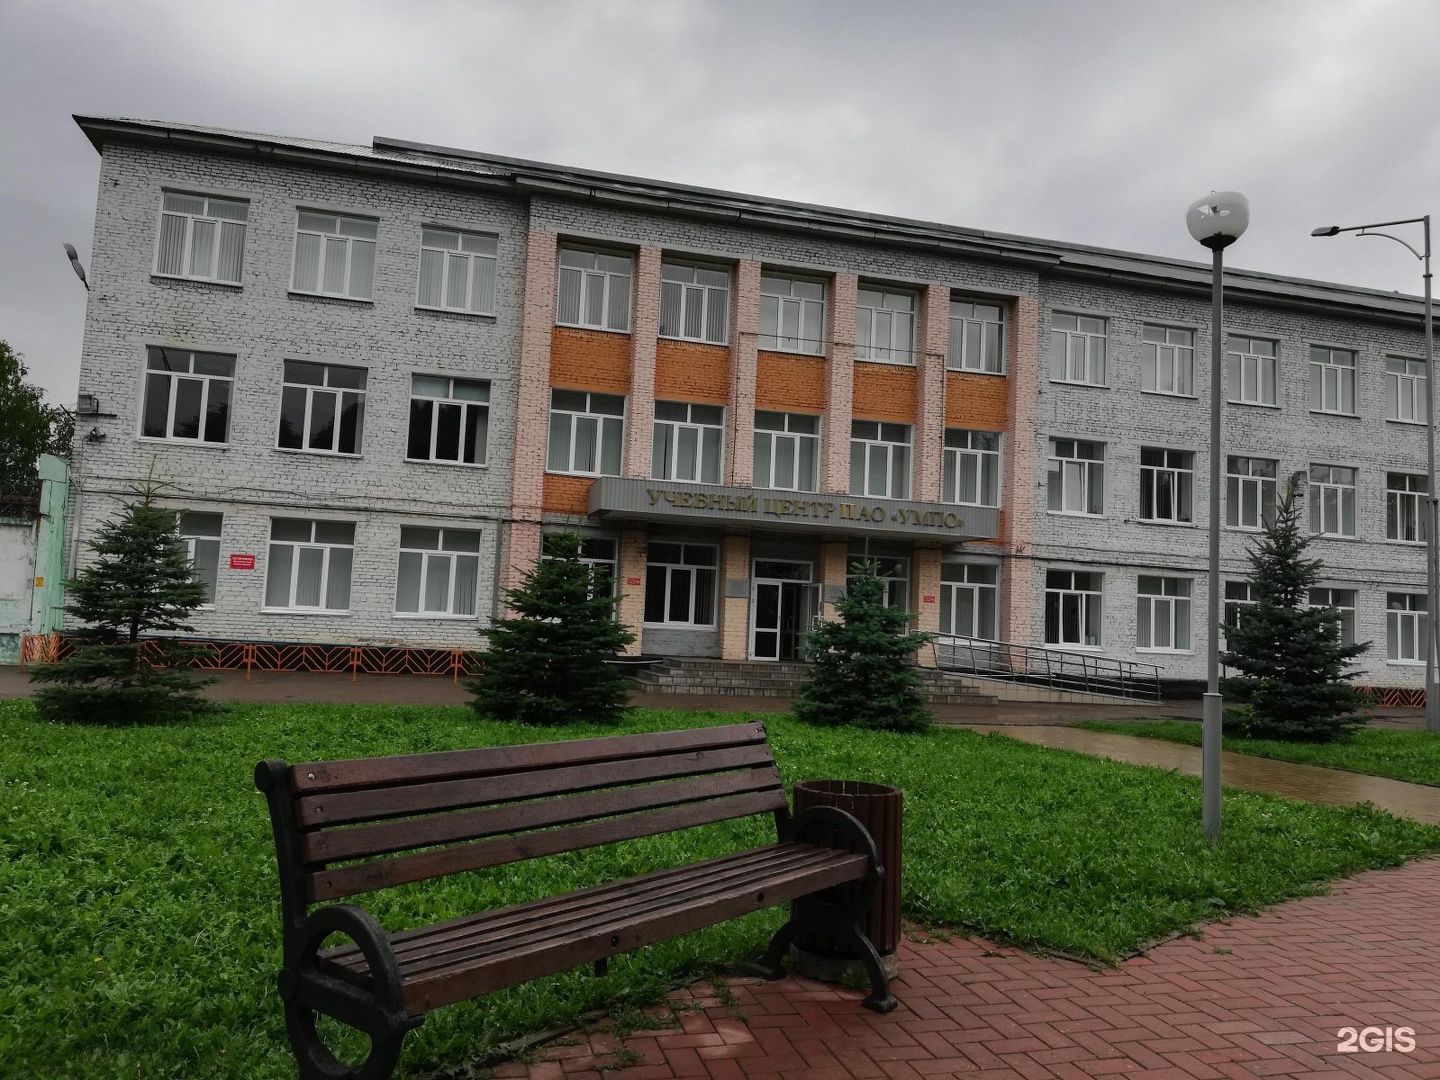 Богородская 47. Уфимский университет науки и технологий фото.